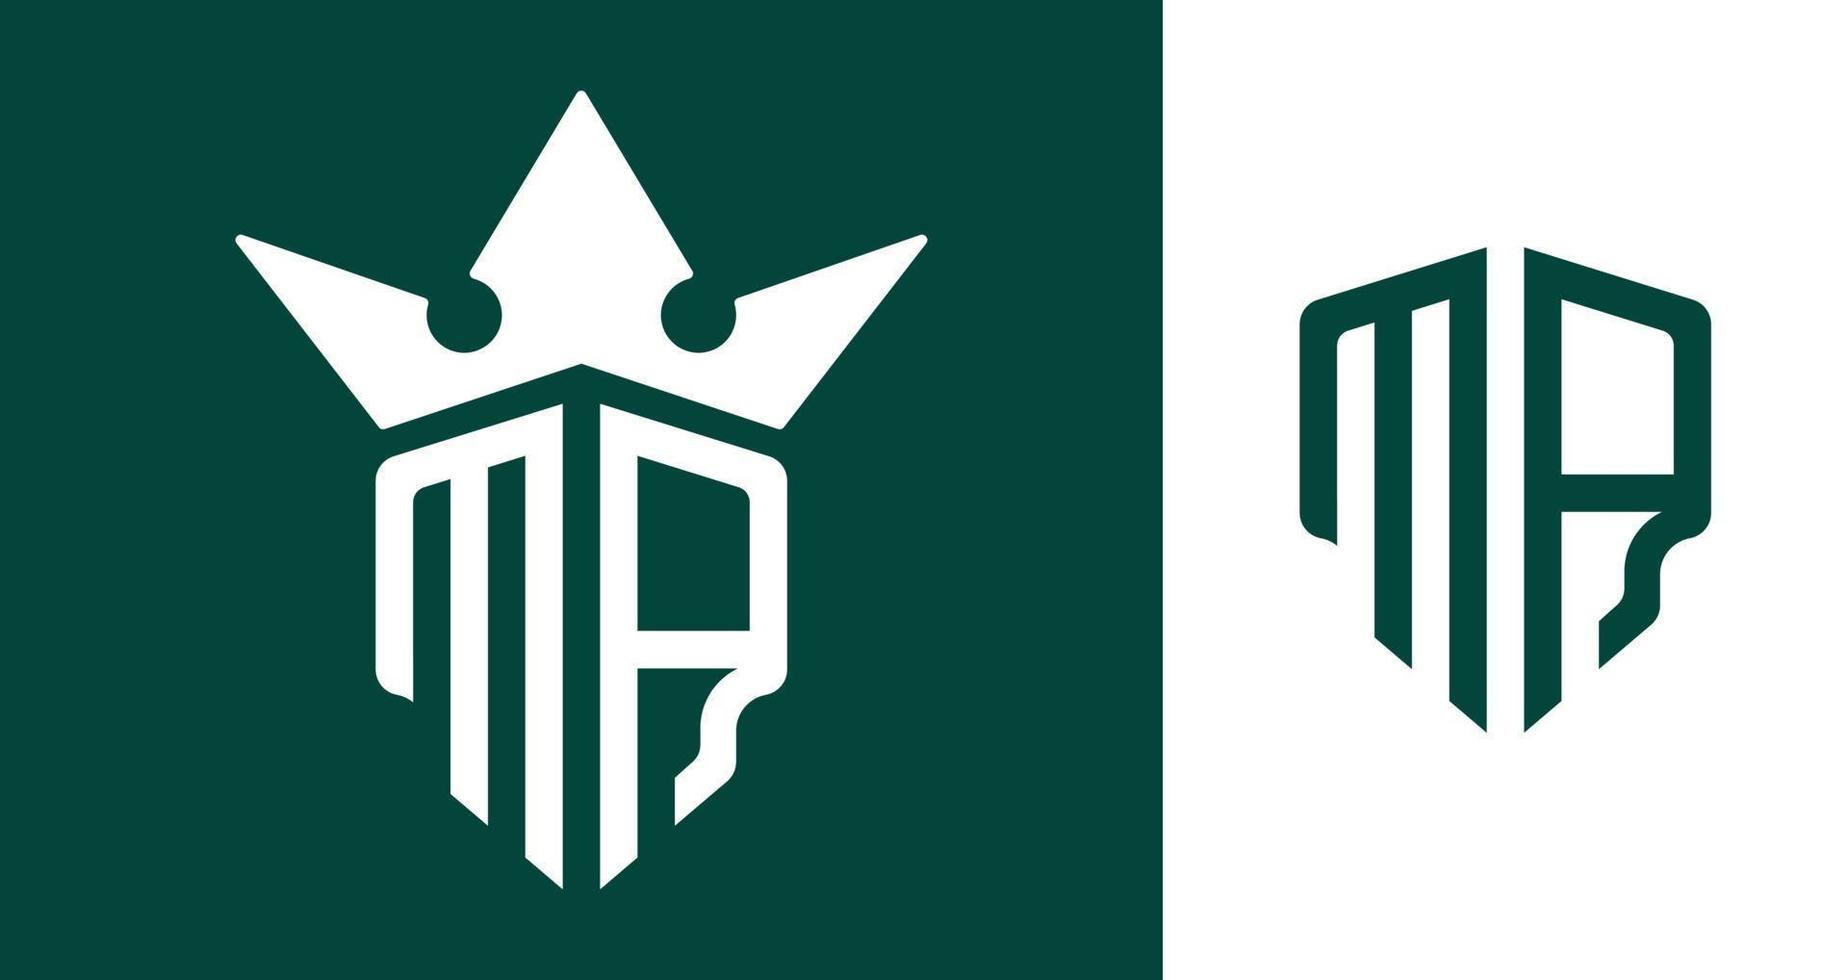 Diseños creativos del logotipo ma de las letras iniciales. vector